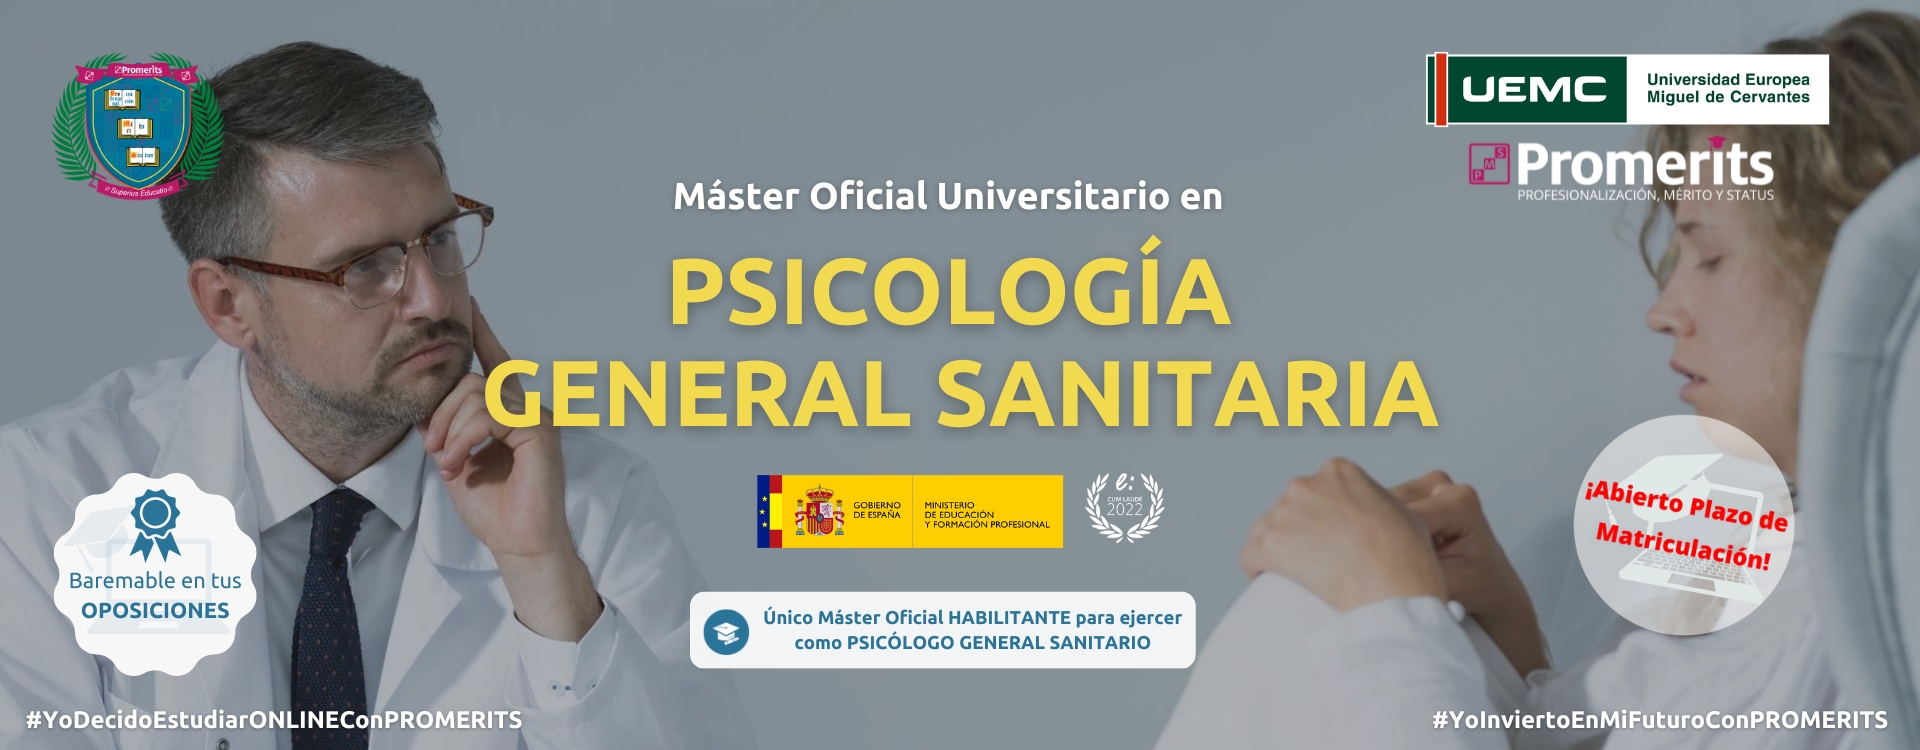 Máster Oficial Universitario en PSICOLOGÍA GENERAL SANITARIA